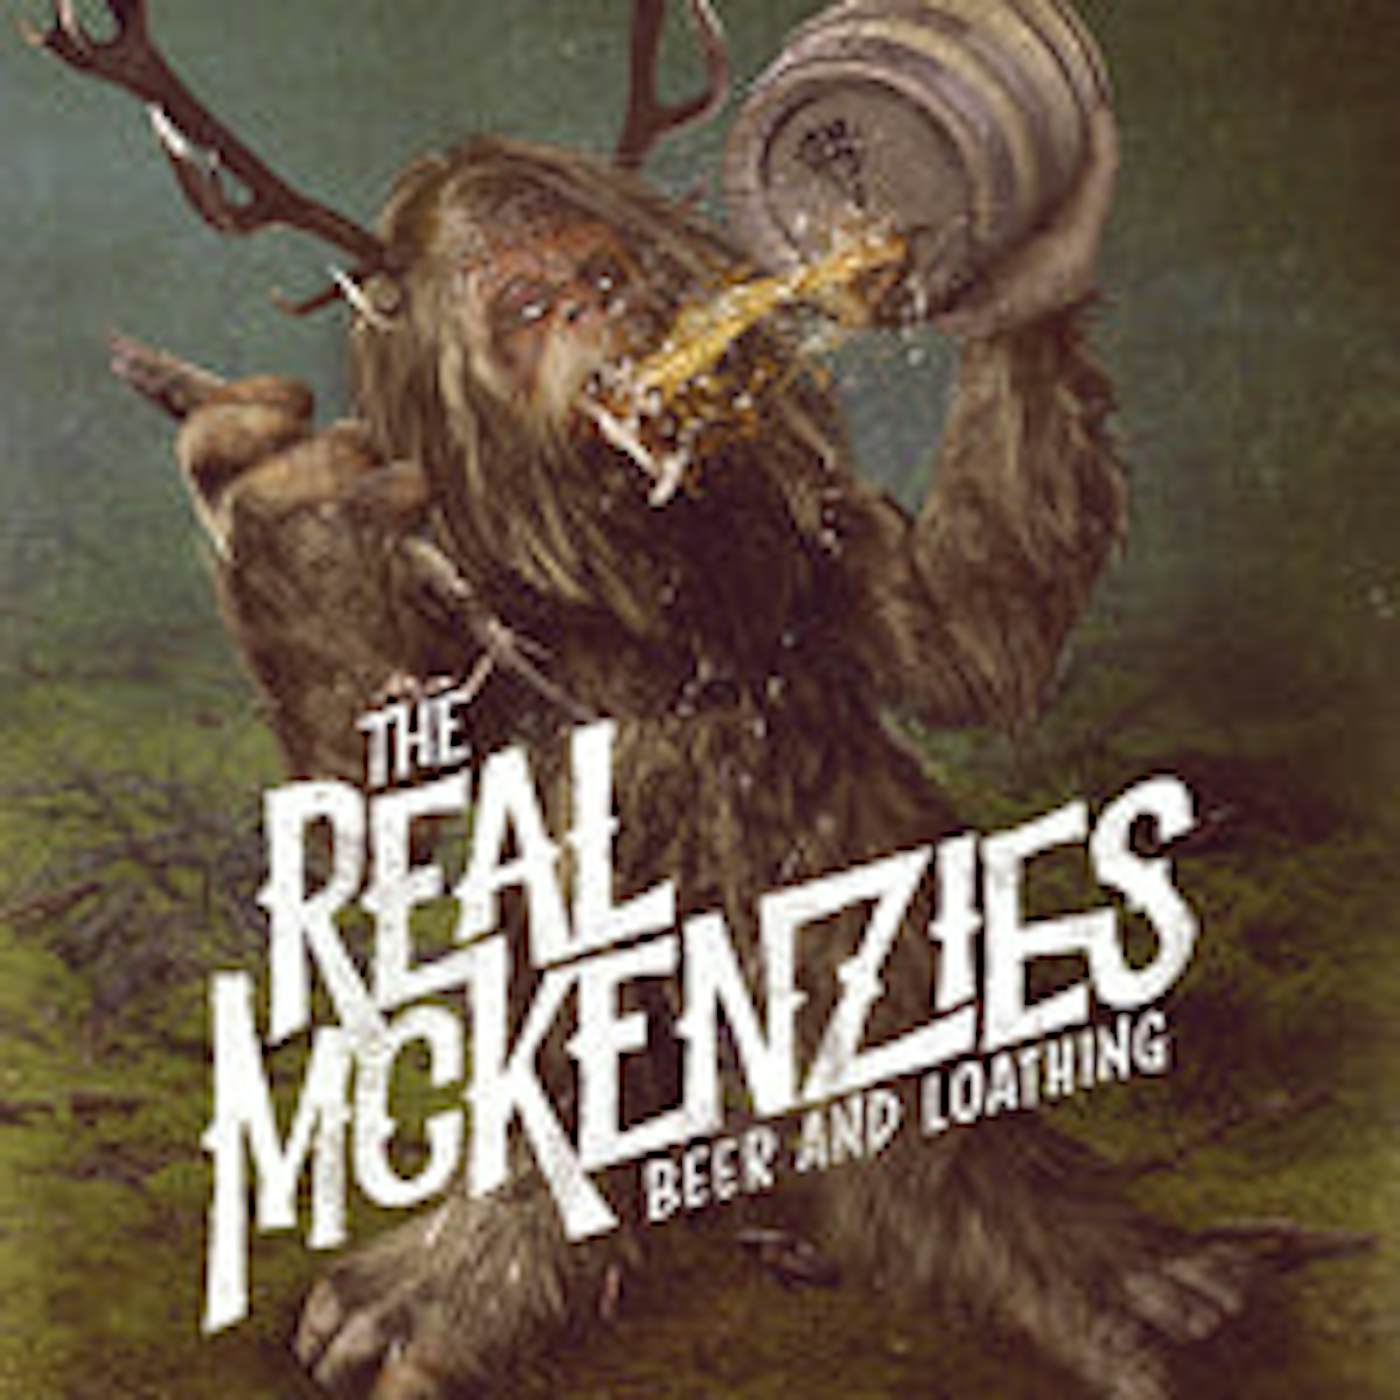 The Real Mckenzies LP - Beer And Loathing (Vinyl)